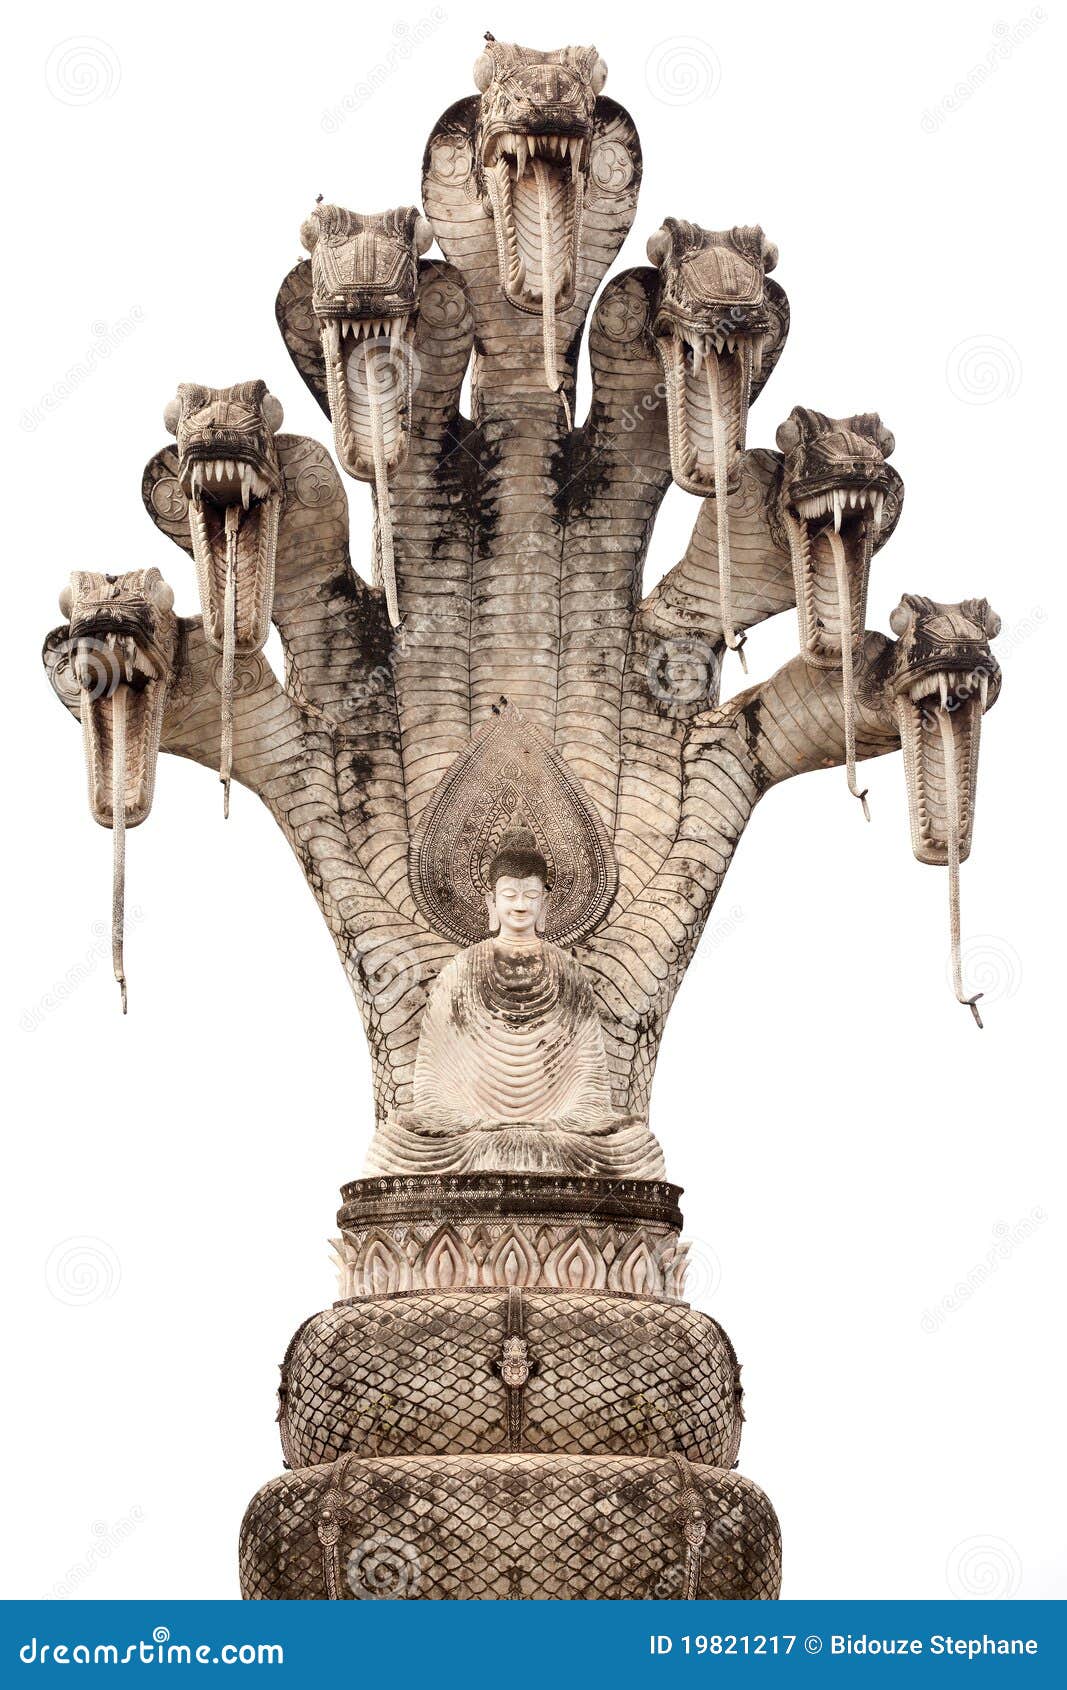 buddha and cobra statue